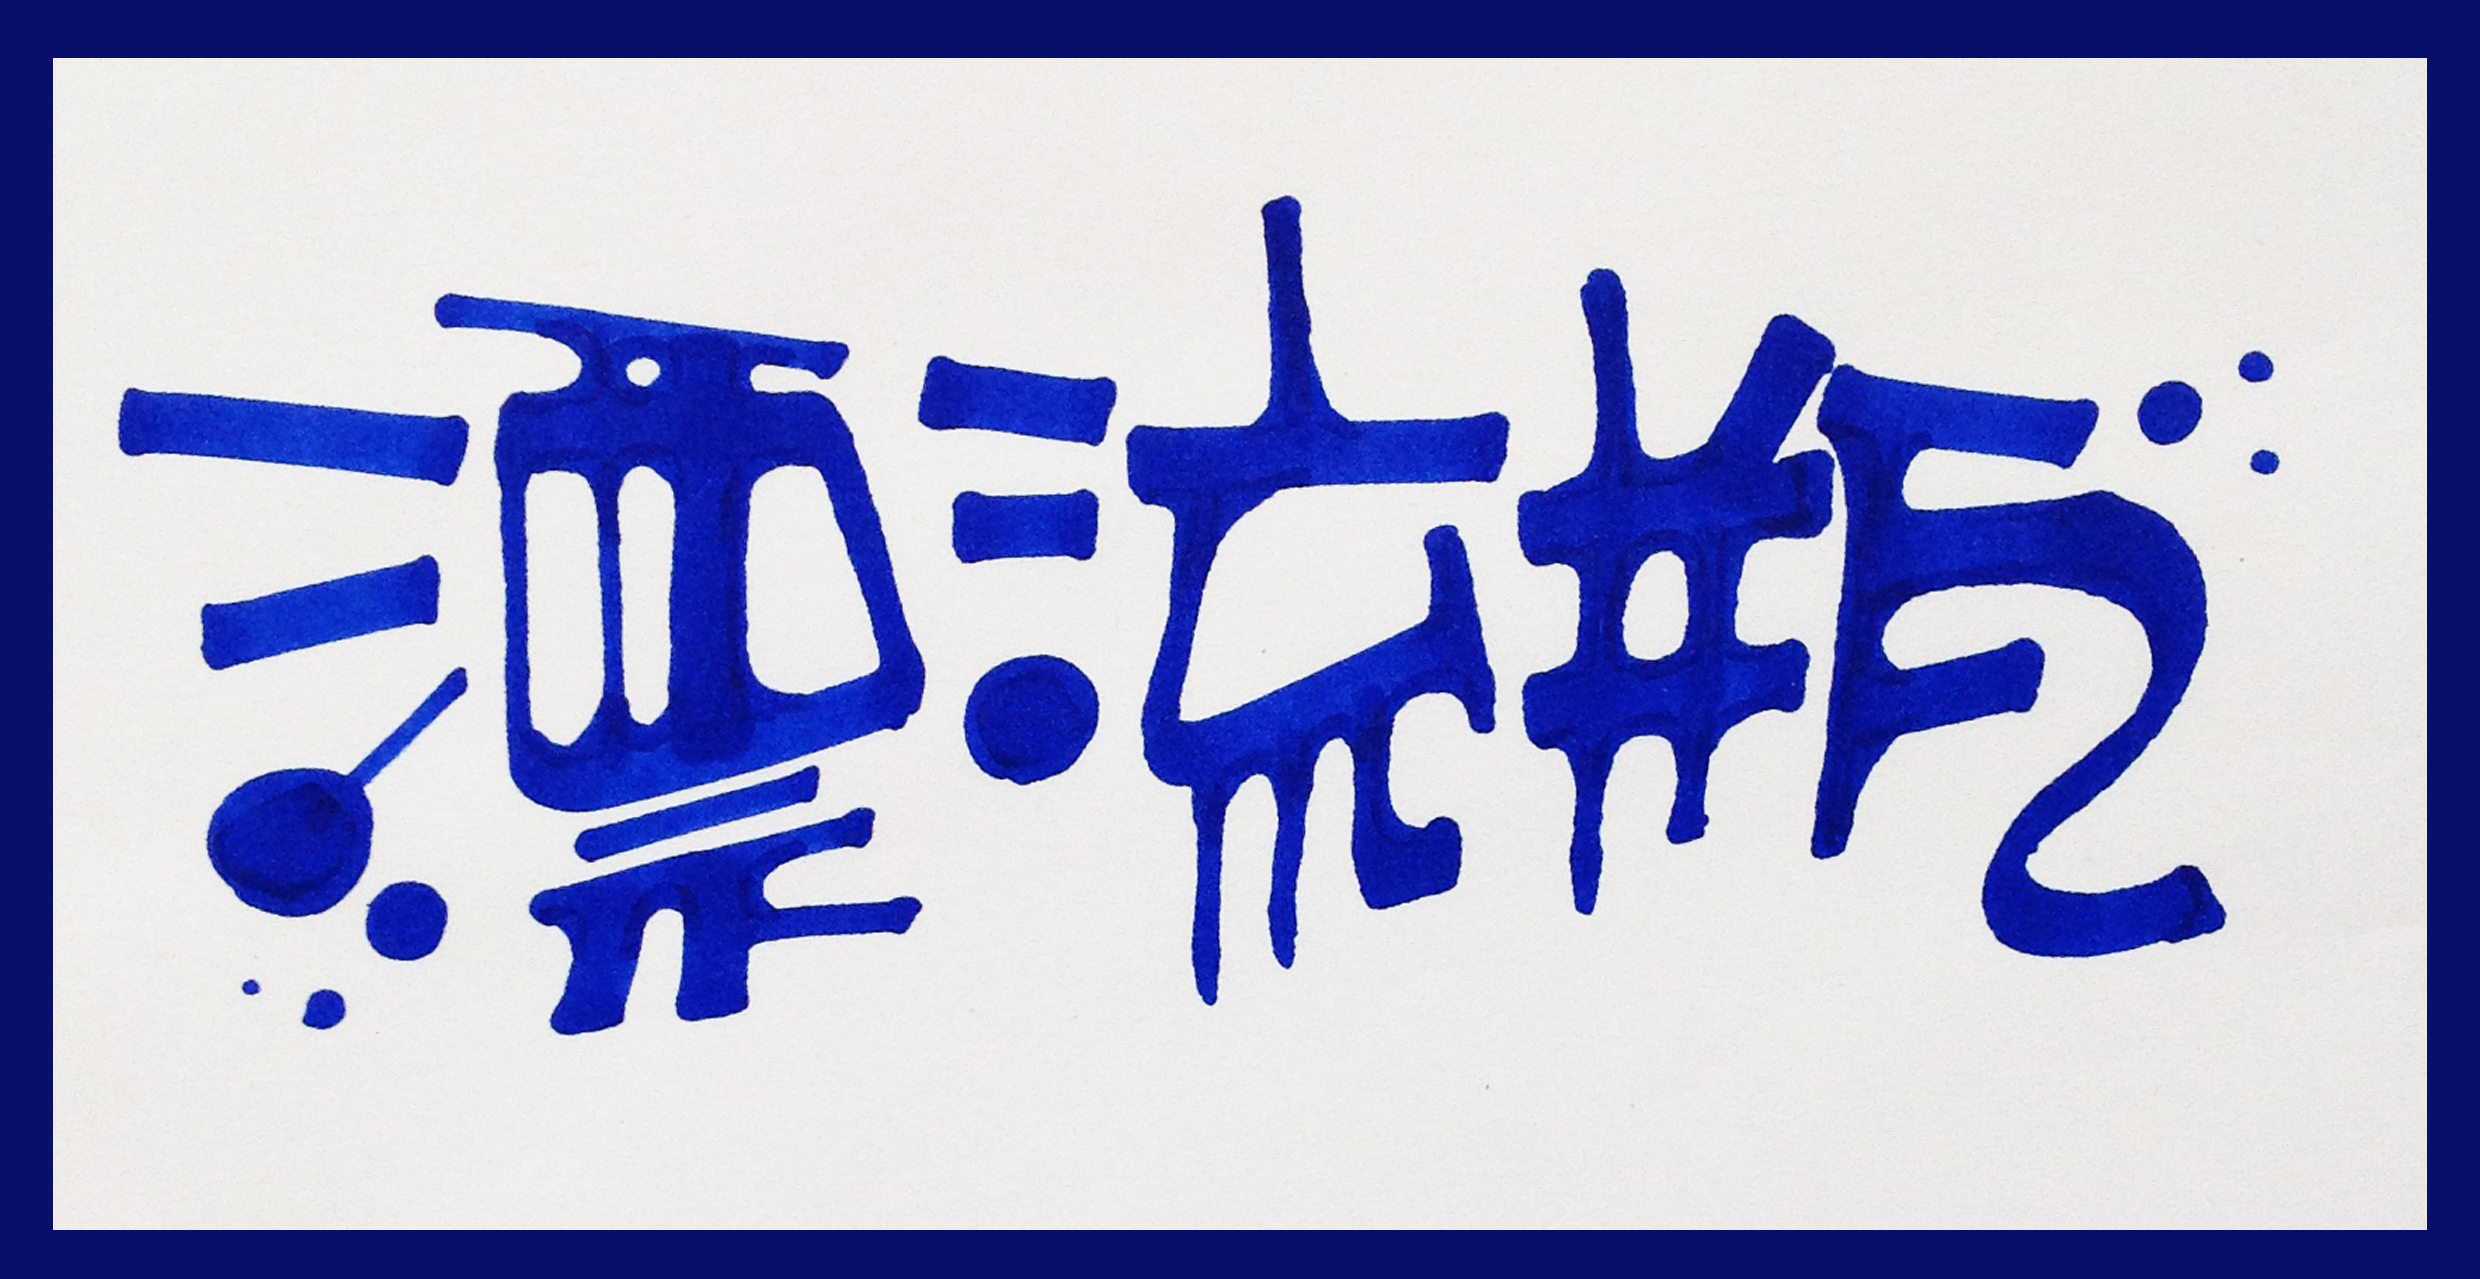 很喜欢这种毛笔书法艺术的点线体的pop~~~啦啦啦,王小煜手绘pop字体.